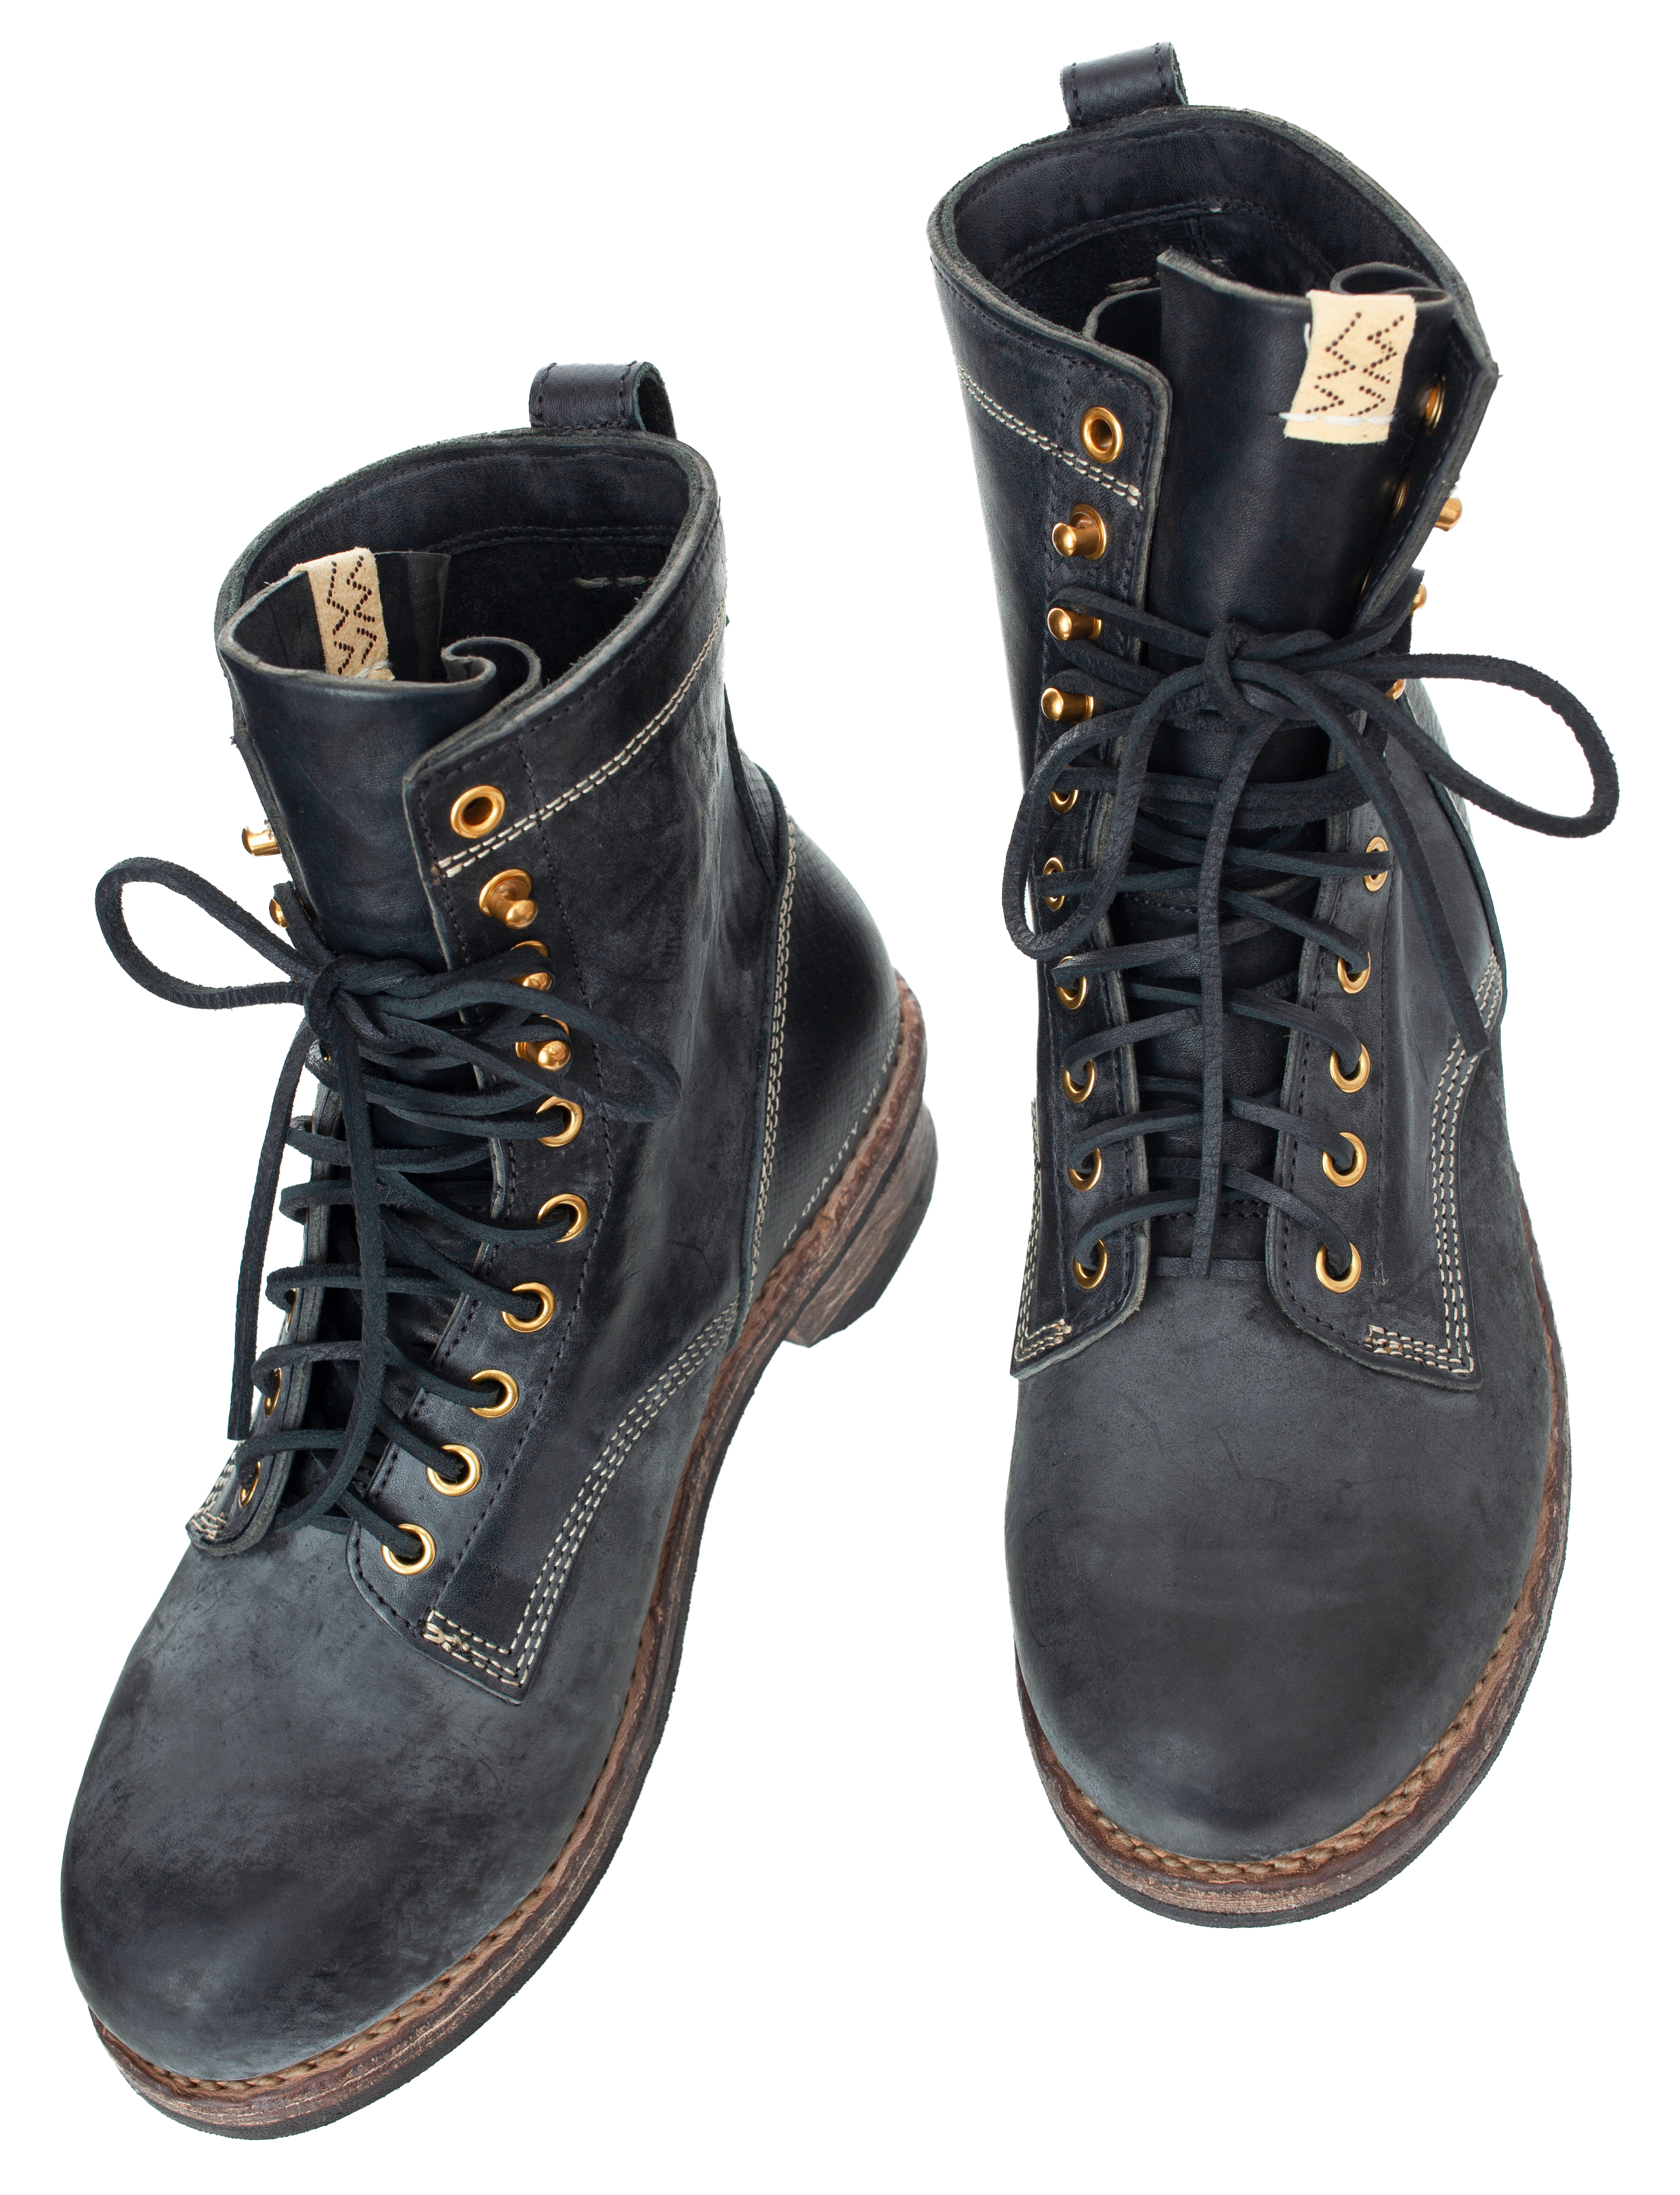 Poundmaker folk leather boots